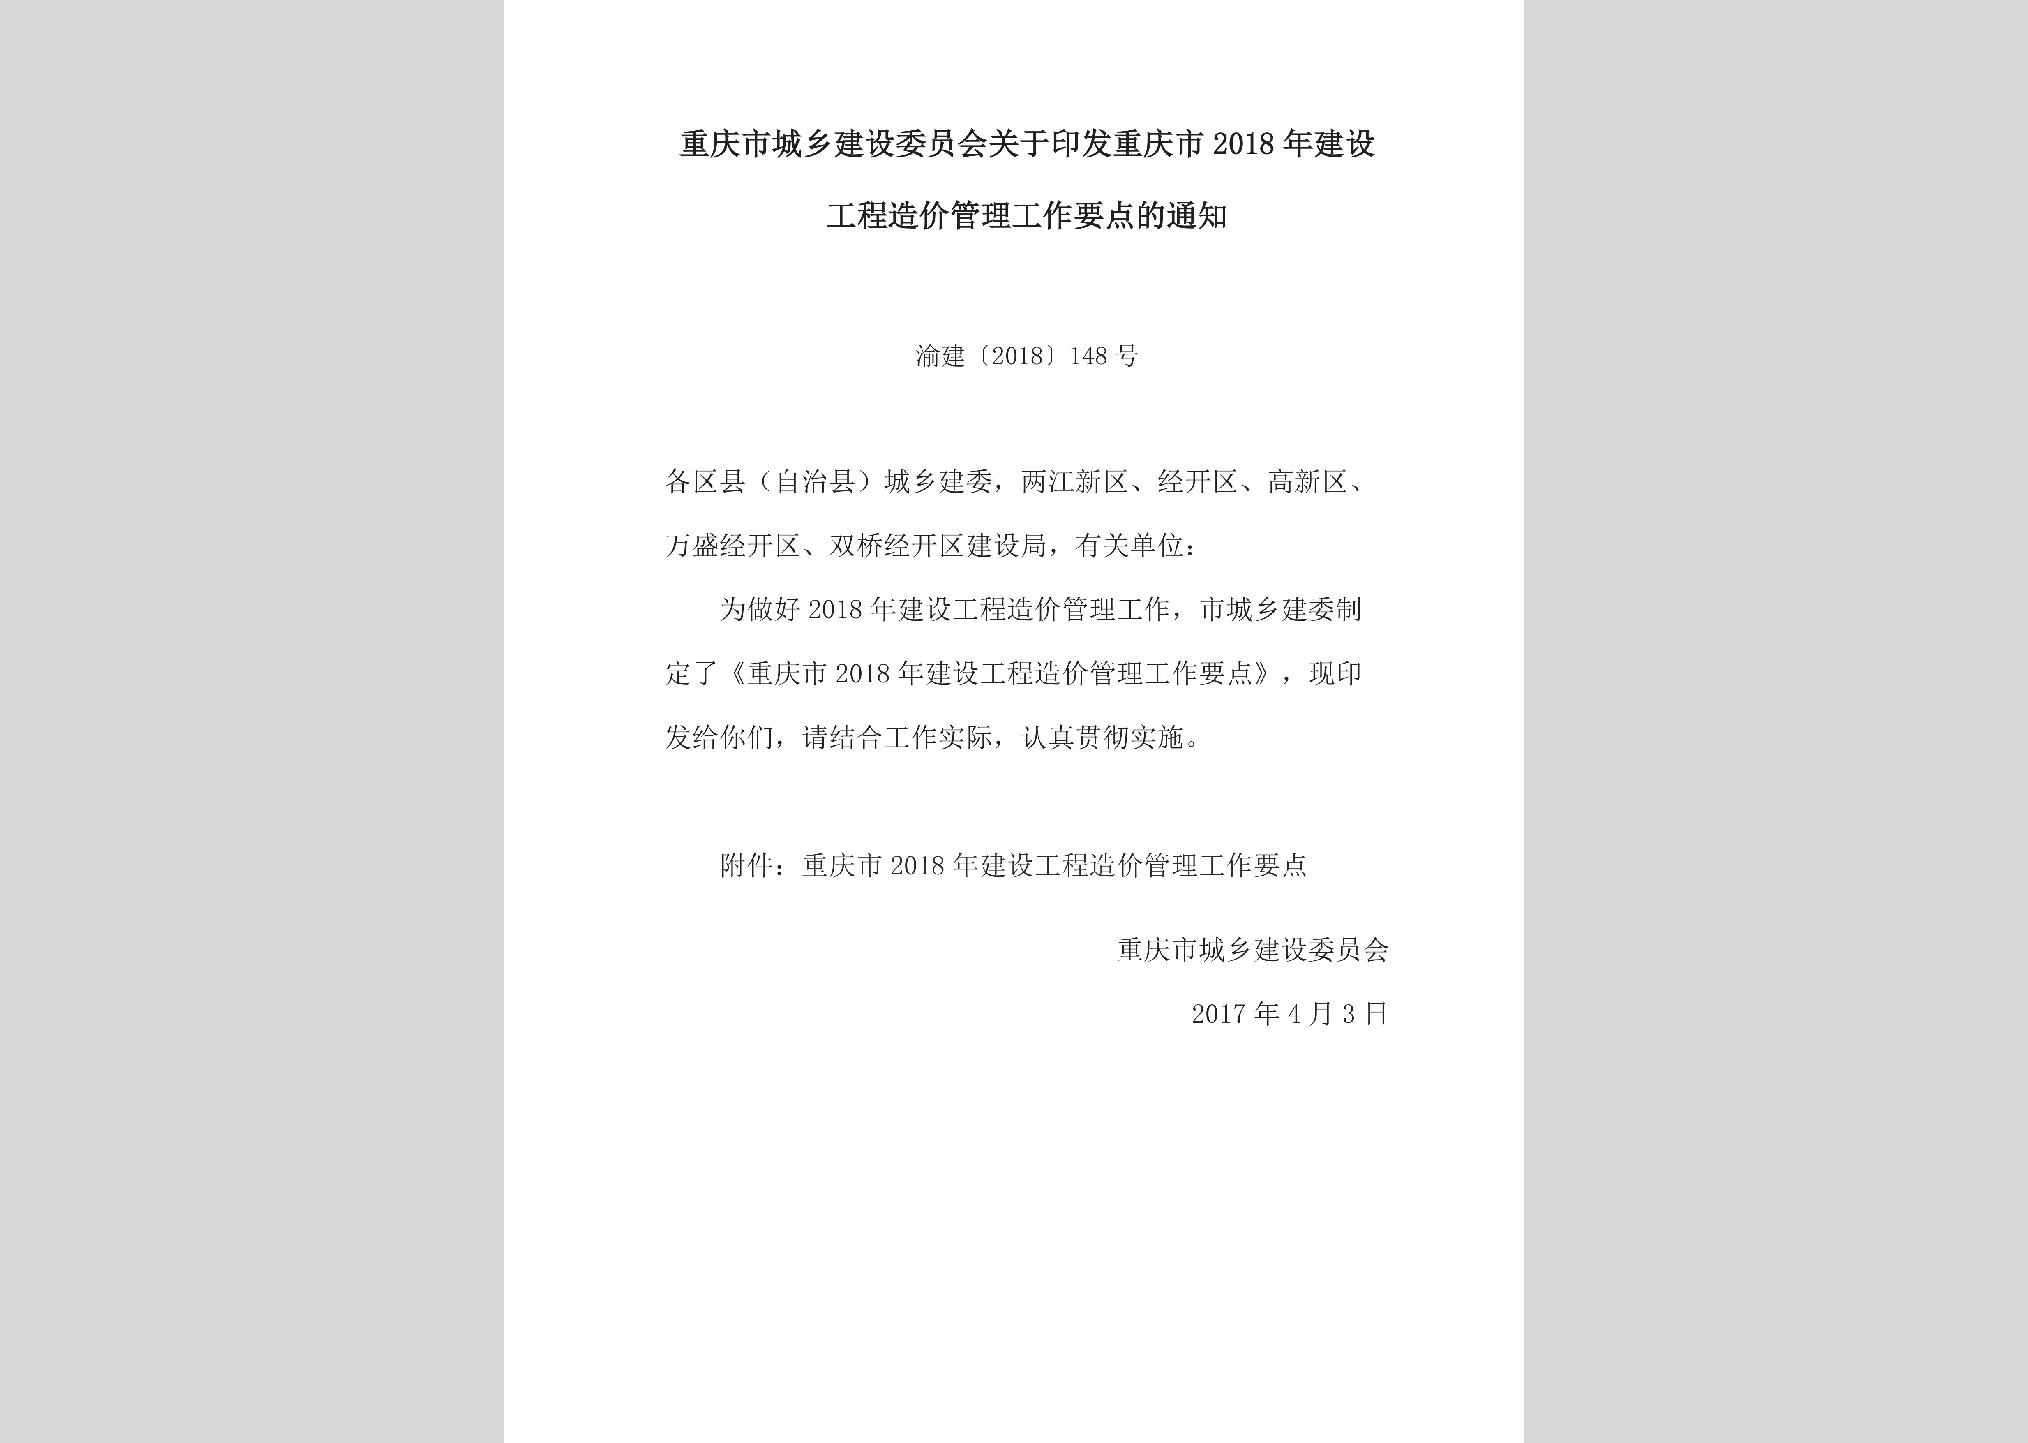 渝建[2018]148号：关于印发重庆市2018年建设工程造价管理工作要点的通知